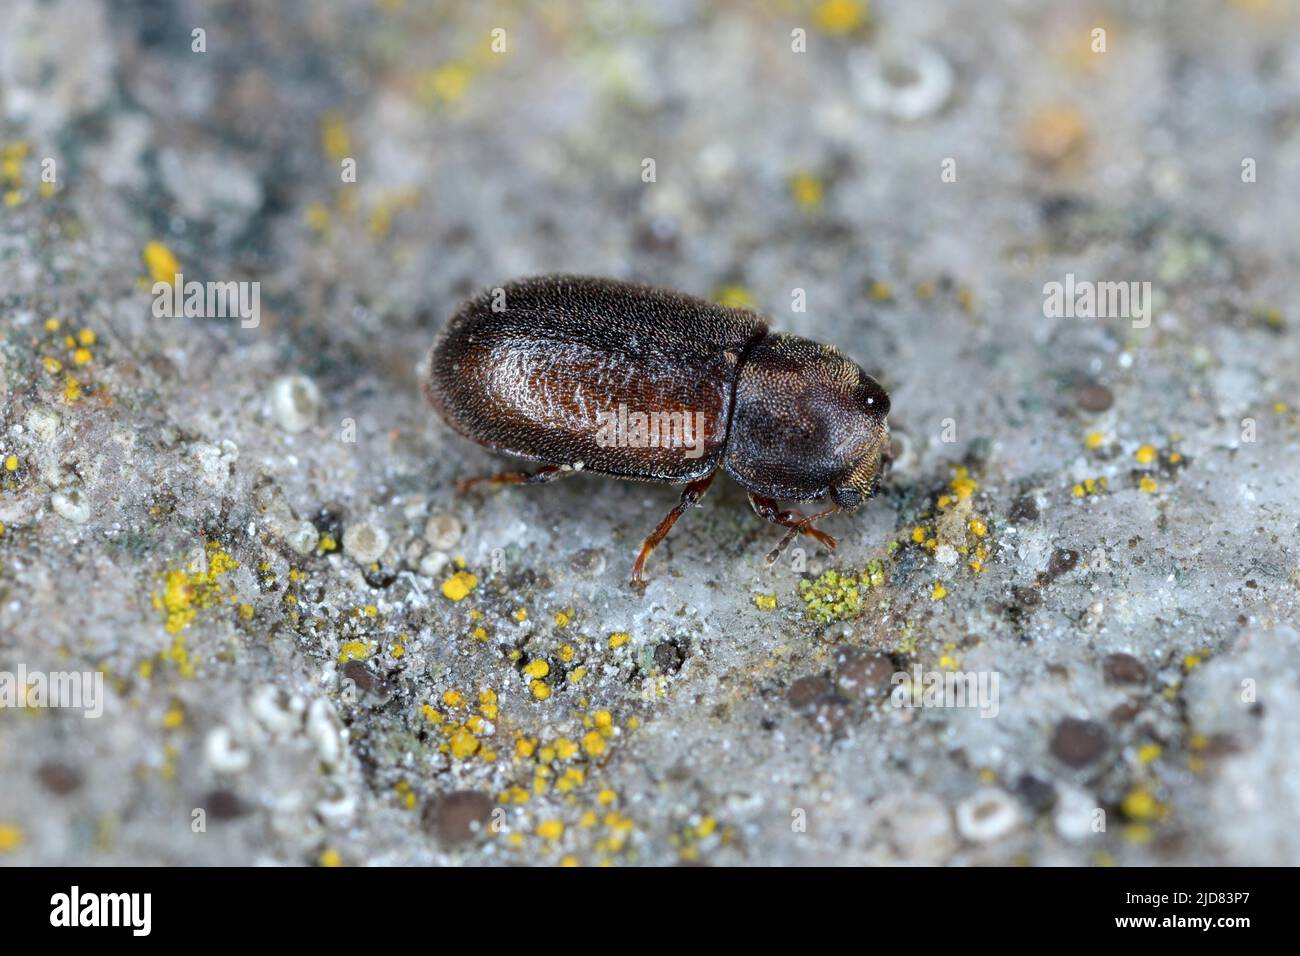 Cis boleti beetles within bracket fungus. Minute tree-fungus beetle living on Polyporales bracket fungus. Stock Photo